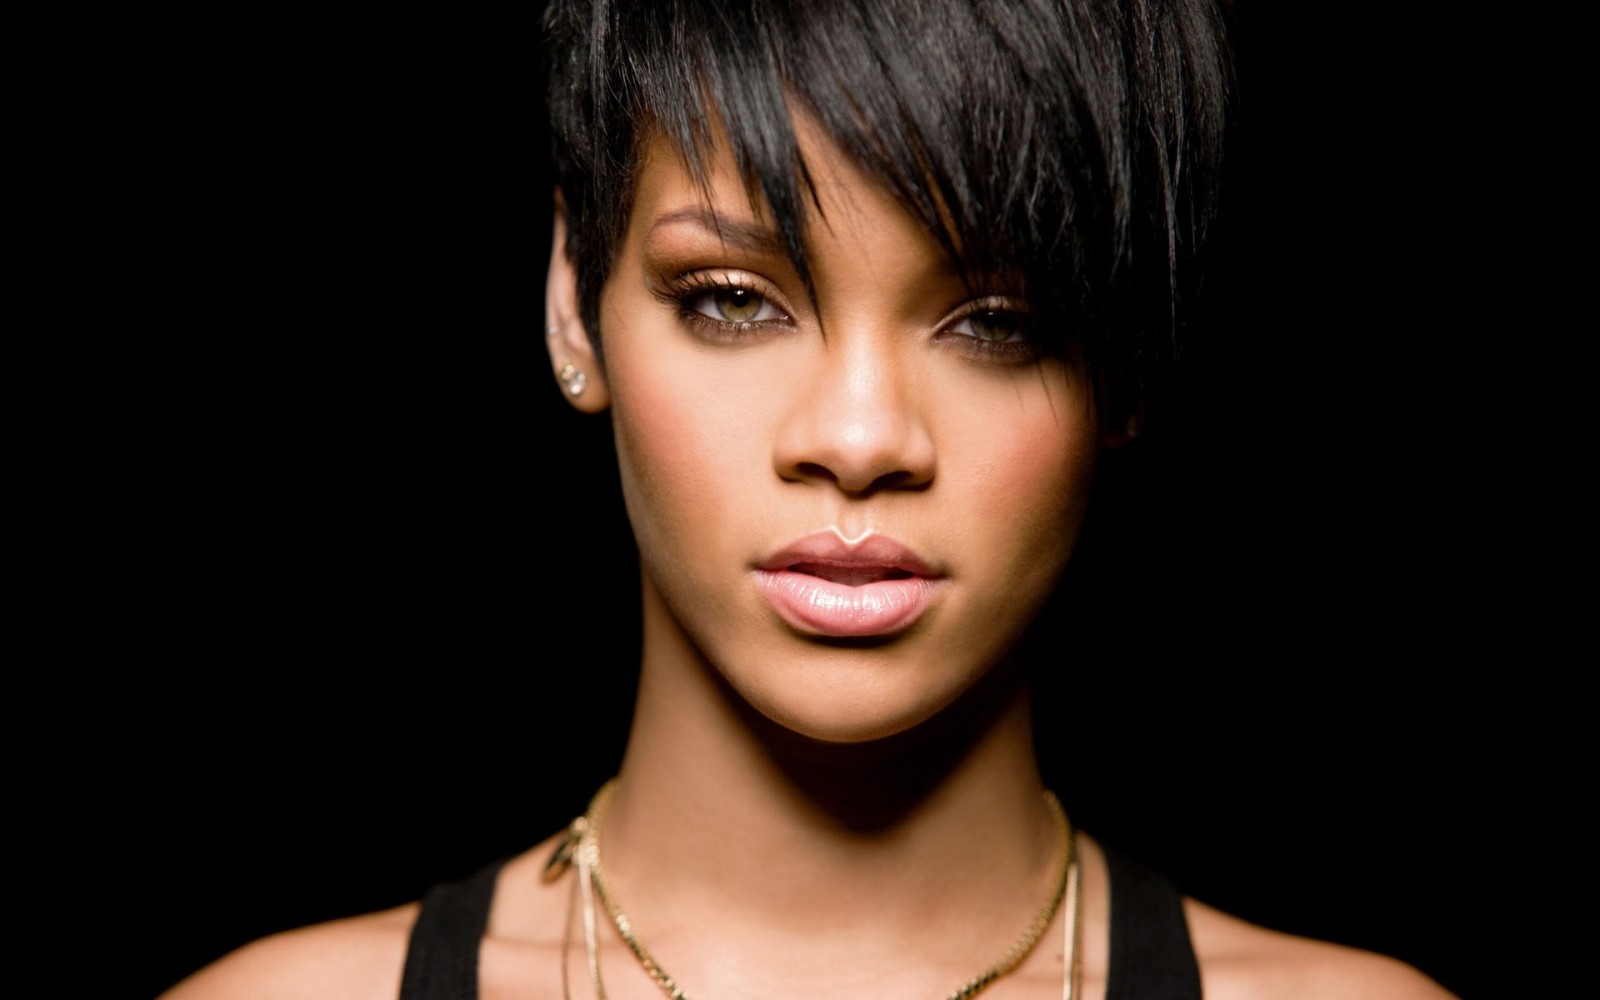 Germany's Rihanna